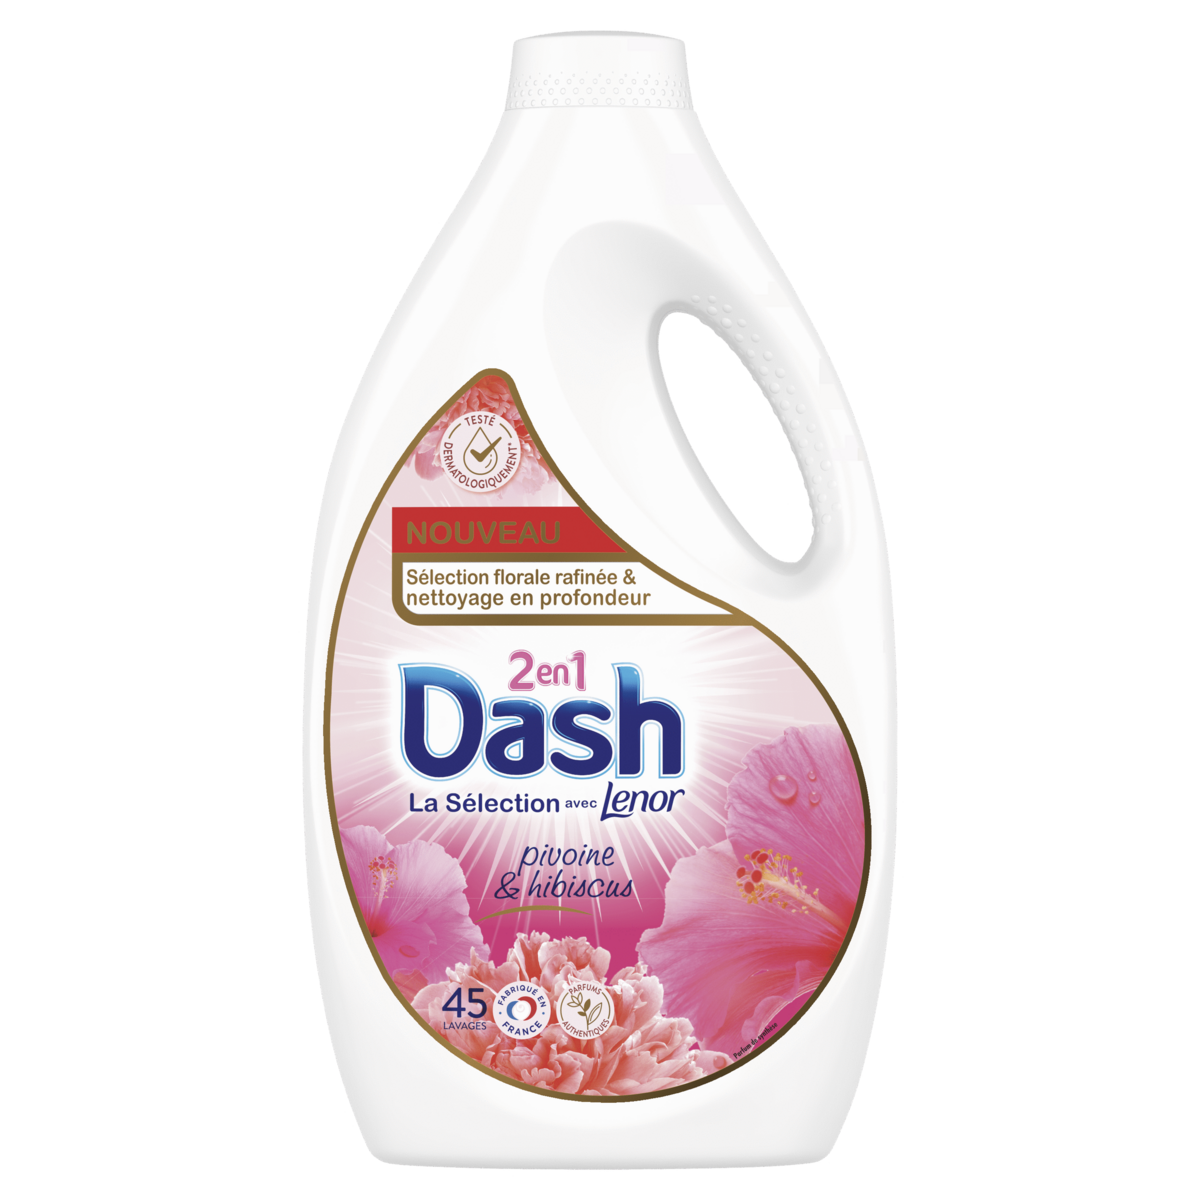 DASH 2en1 Lessive Liquide pivoine et hibiscus 45 lavages 2.25l pas cher 